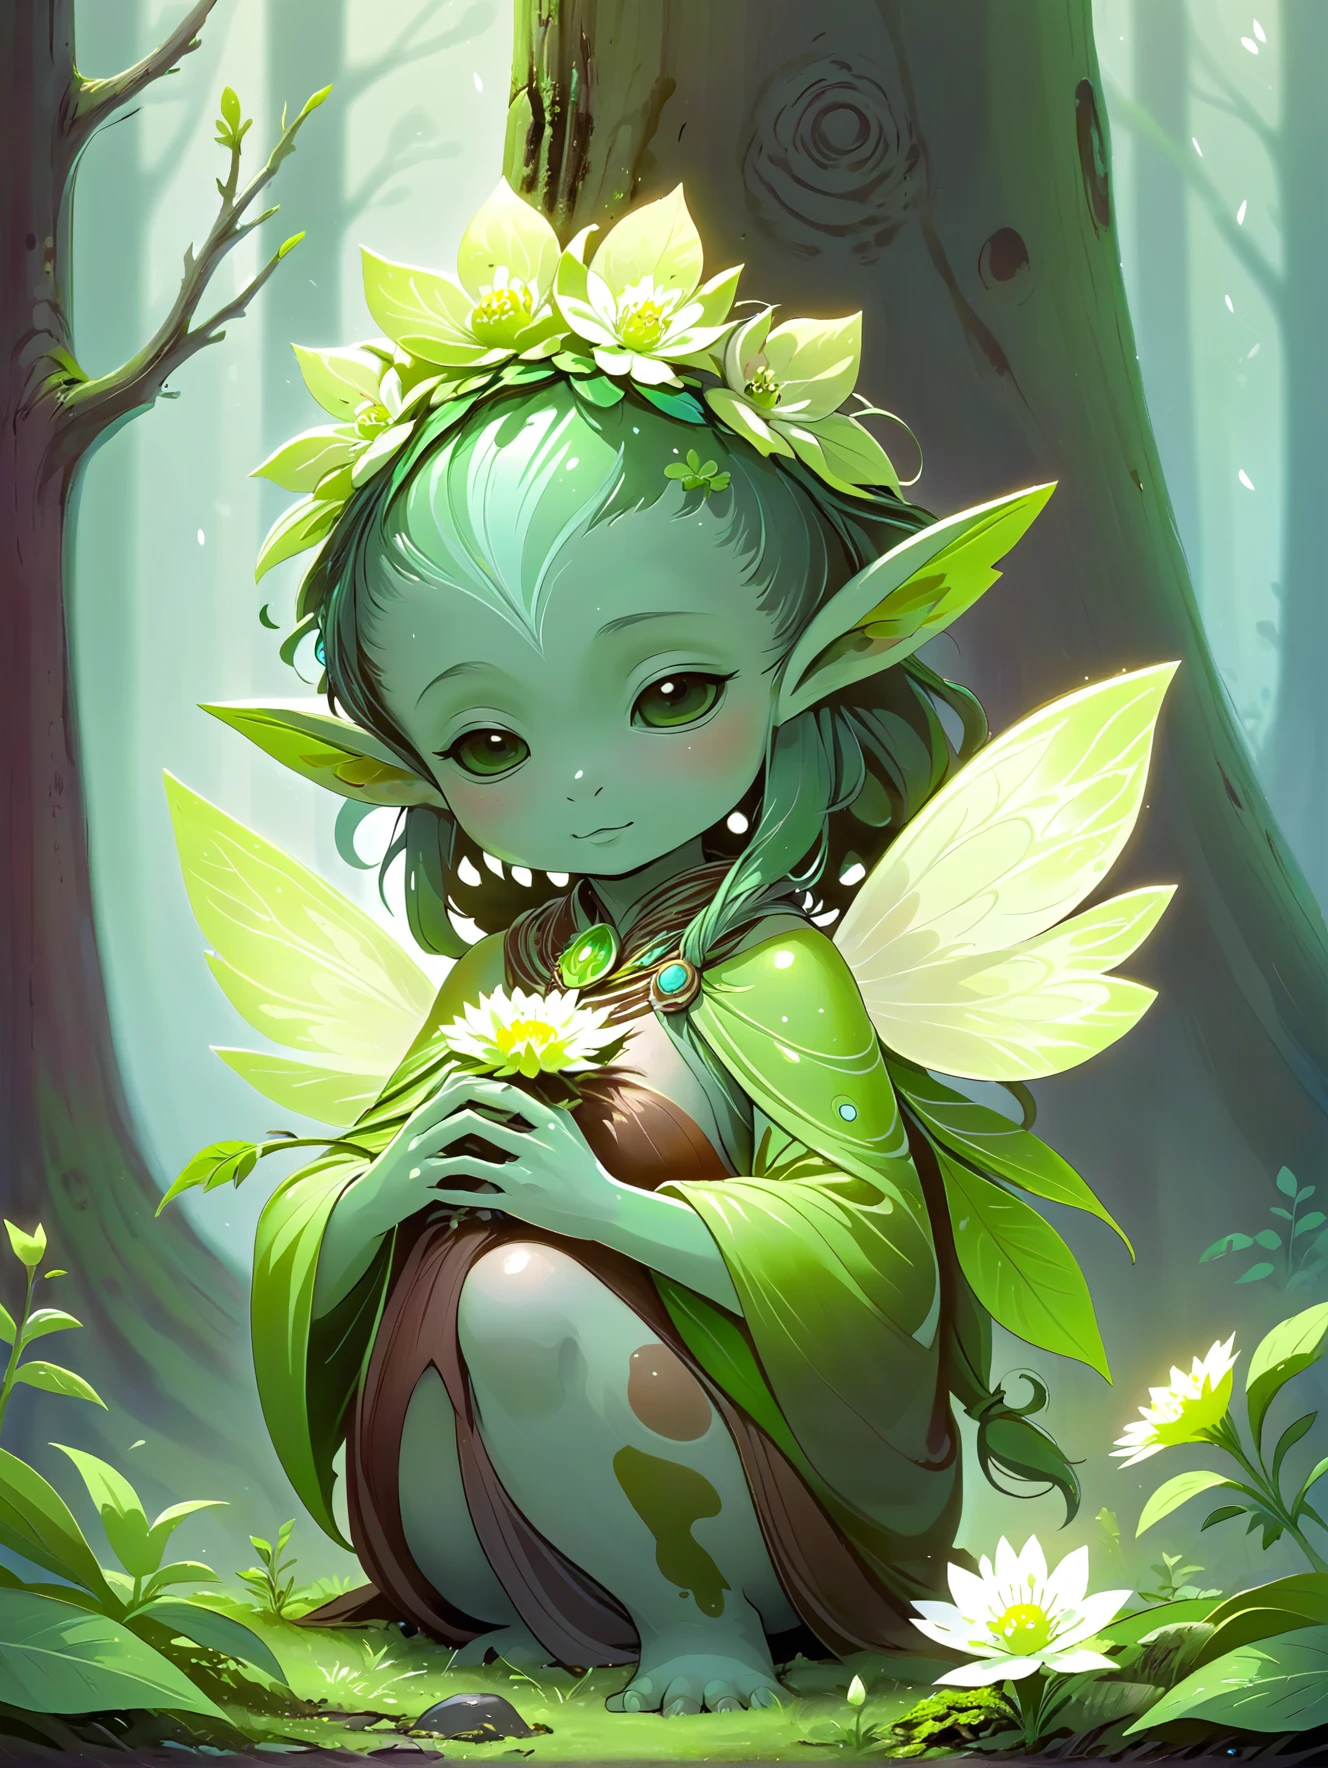 روح ارضية, مع لون أخضر مطحلب, تميل إلى زهرة في مهدها في إزالة الغابات.